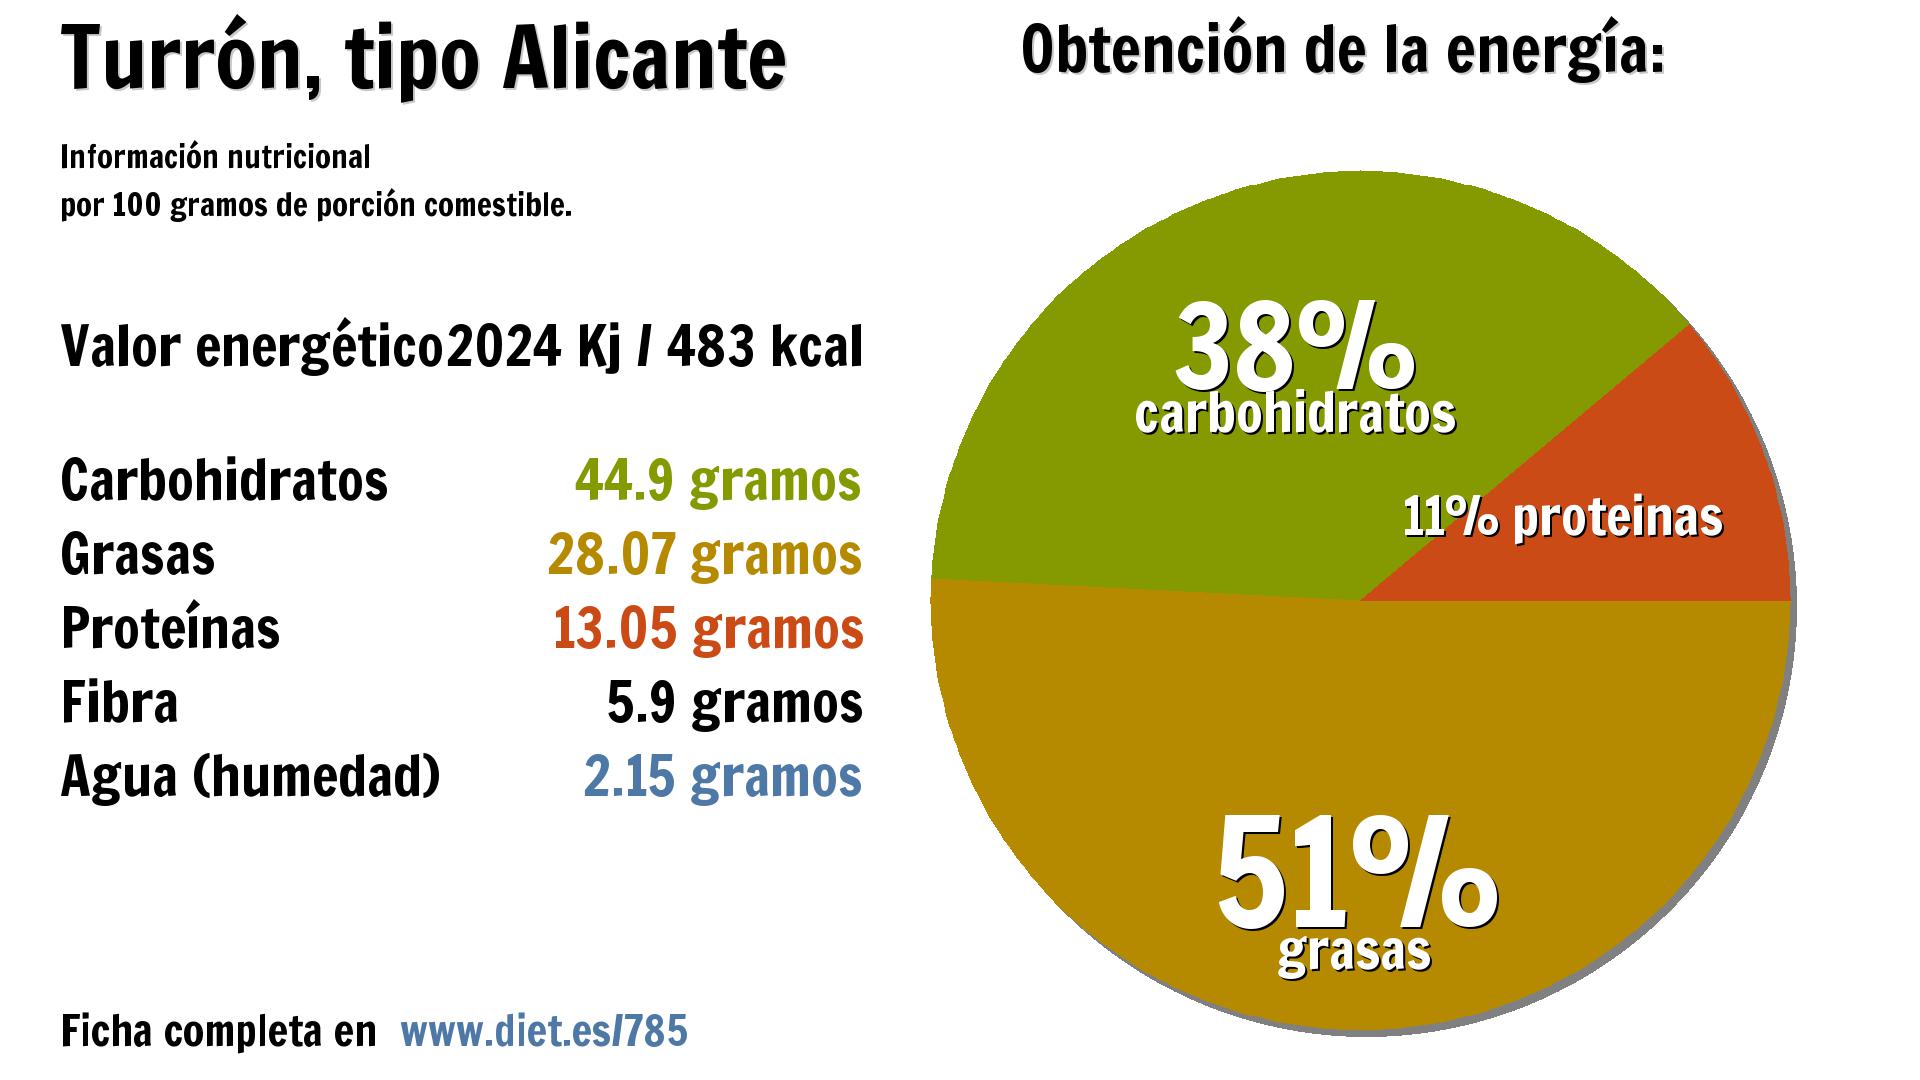 Turrón, tipo Alicante: energía 2024 Kj, carbohidratos 45 g., grasas 28 g., proteínas 13 g., fibra 6 g. y agua 2 g.